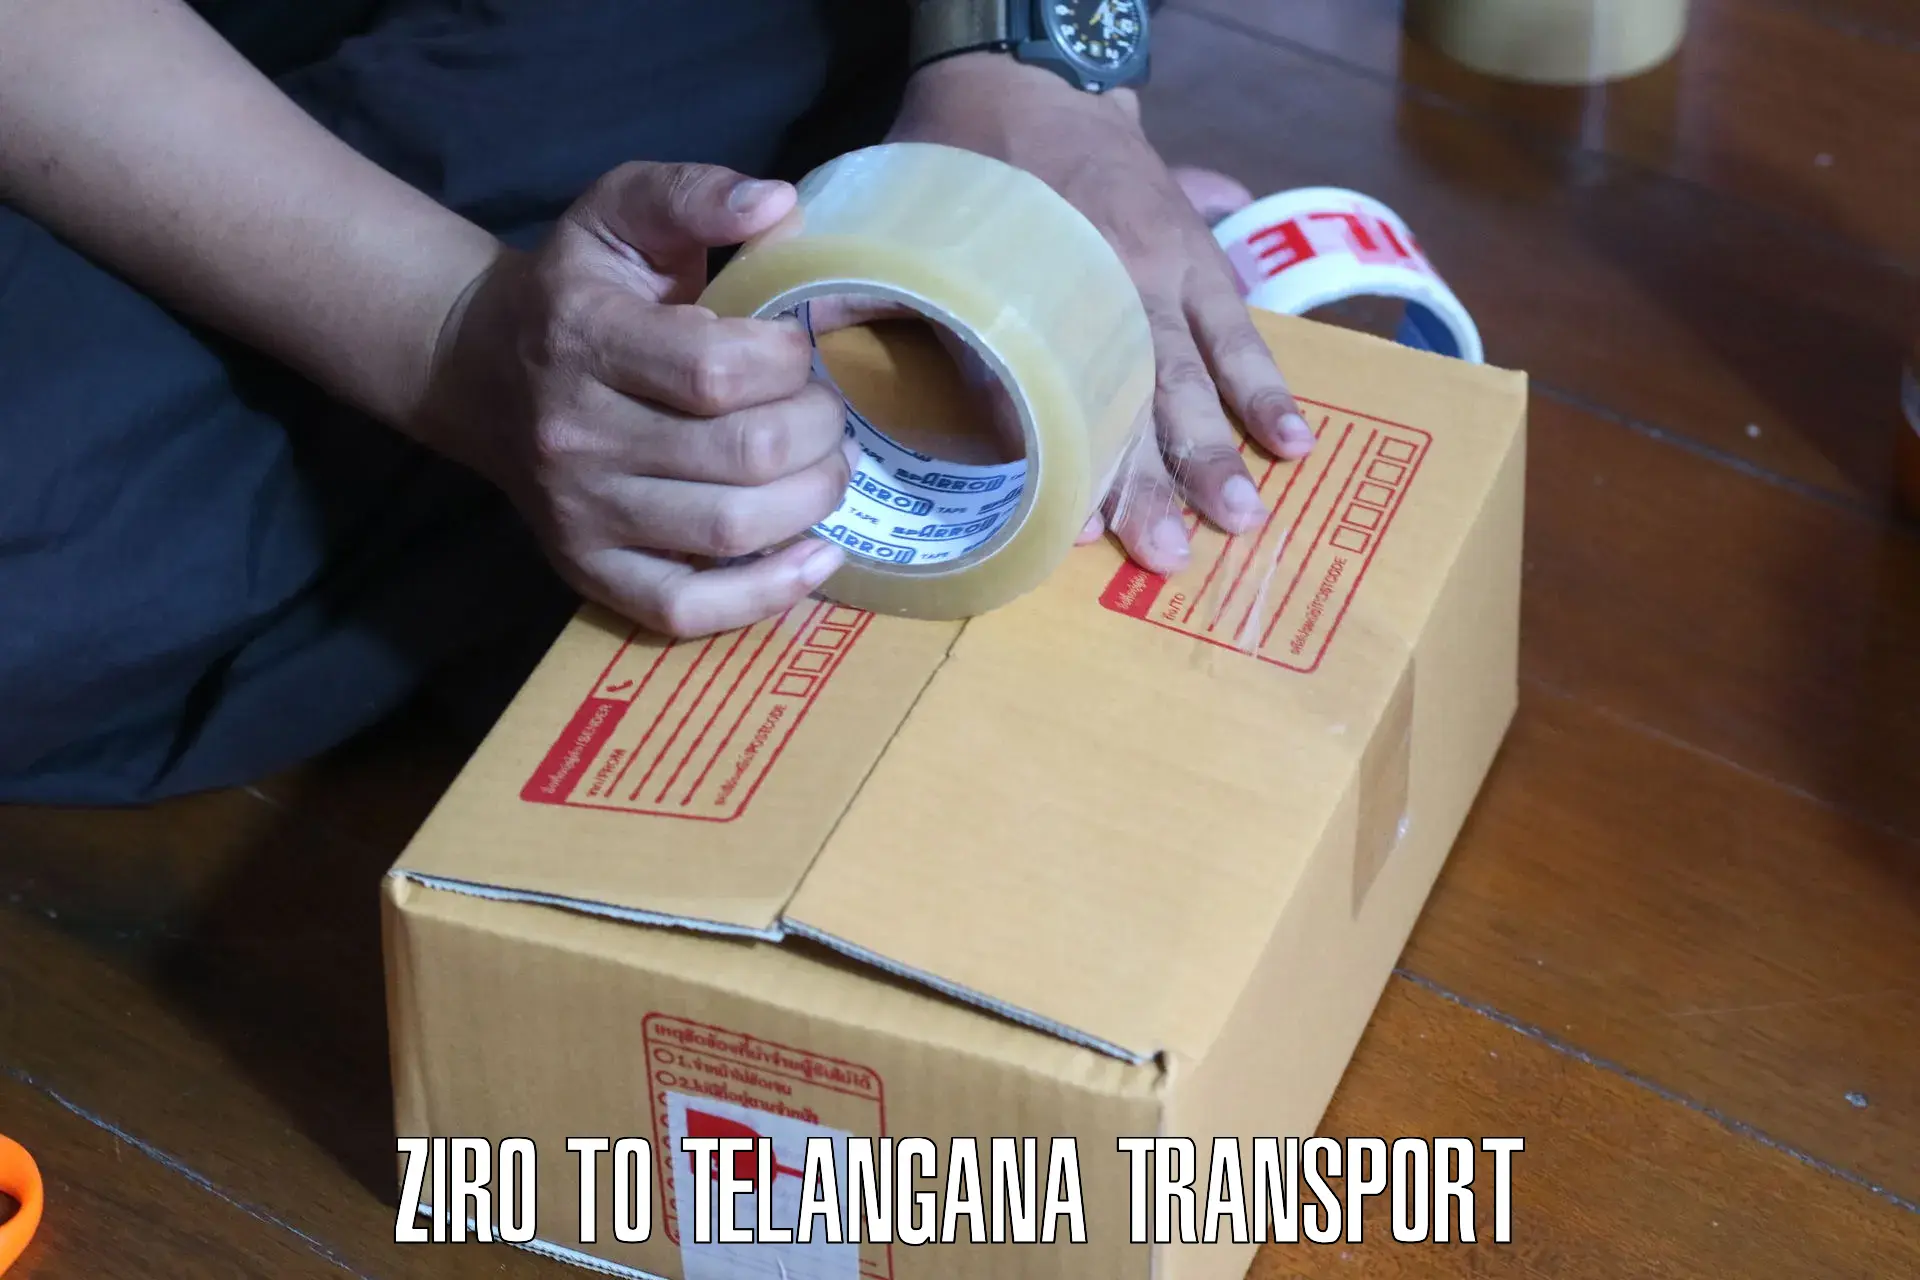 Two wheeler parcel service Ziro to Narmetta